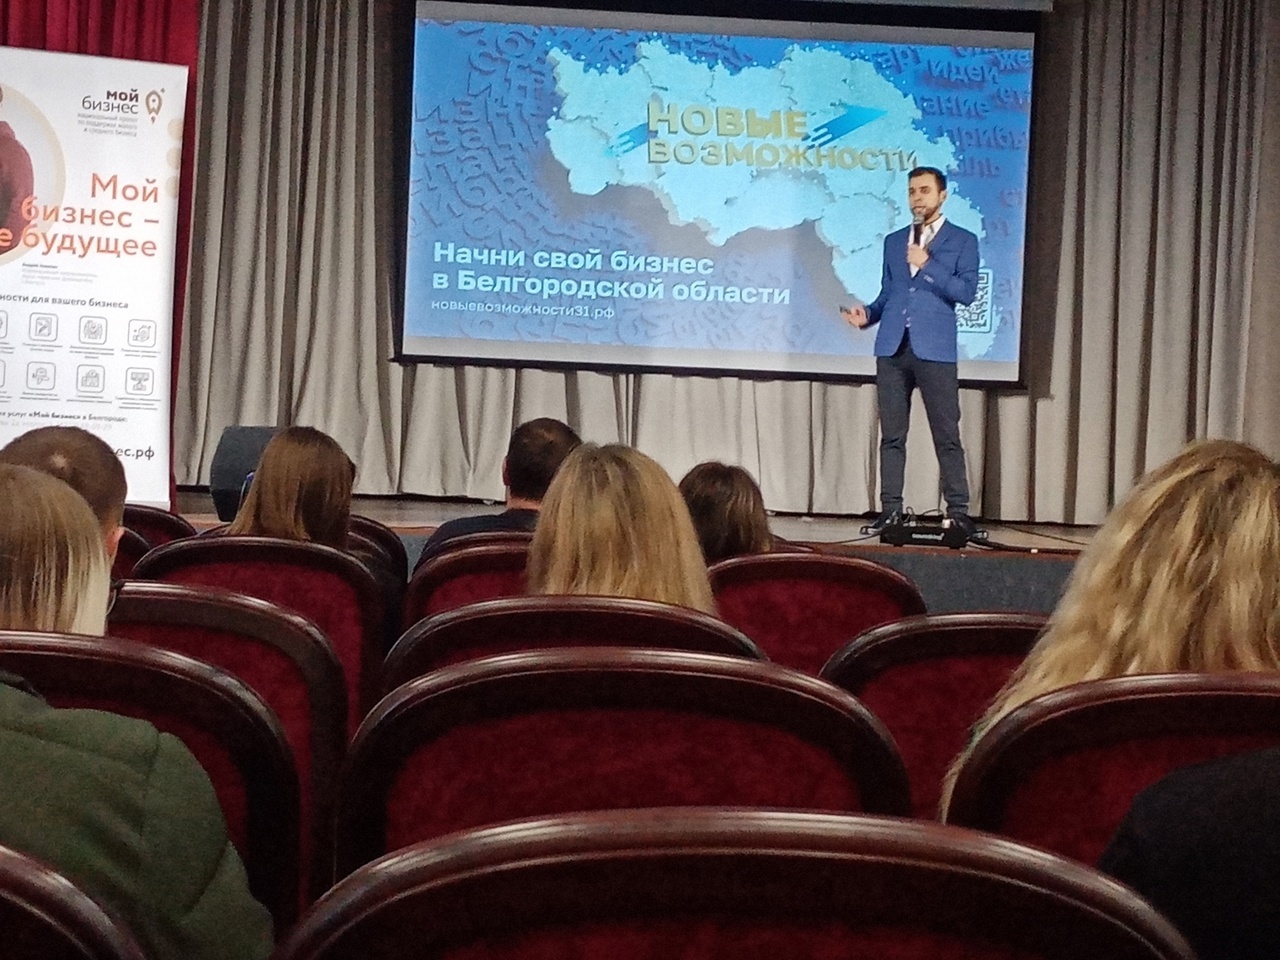 В Алексеевке состоялась конференция &quot;Новые возможности 3.0&quot;.